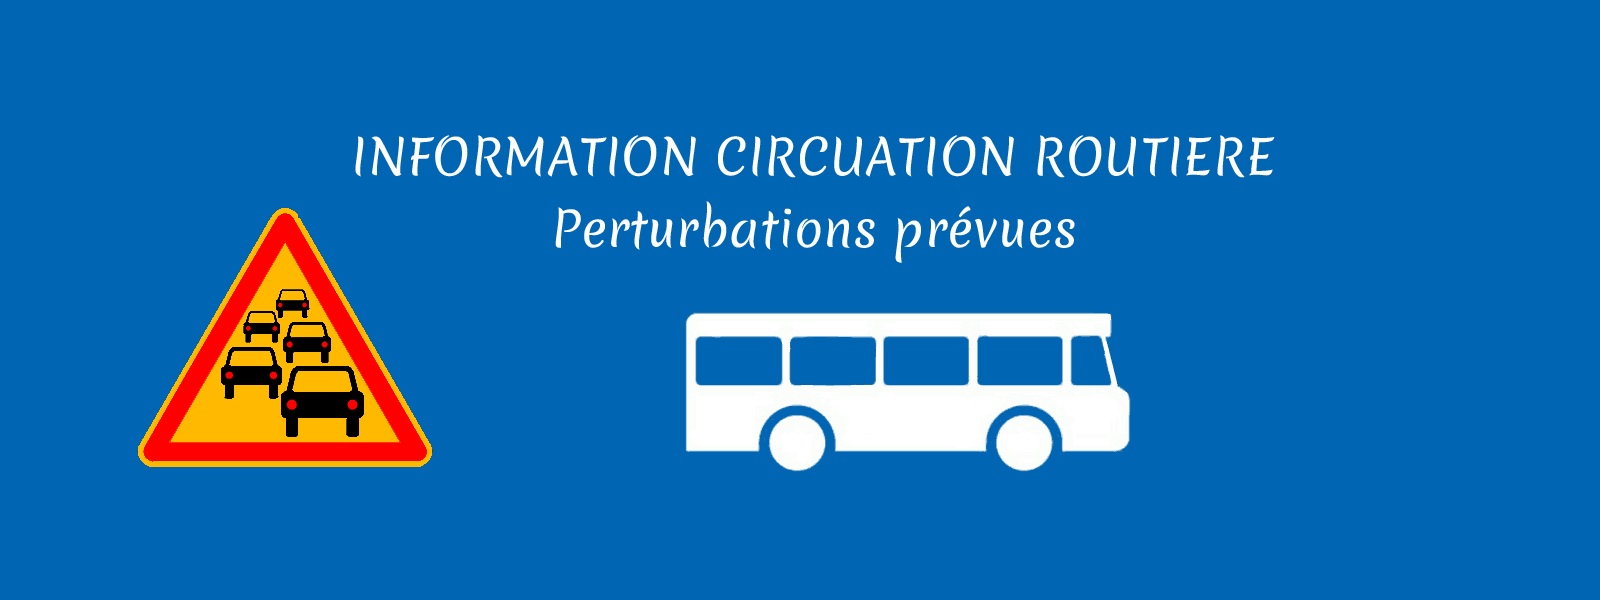 Circulation routière - Perturbations prévues